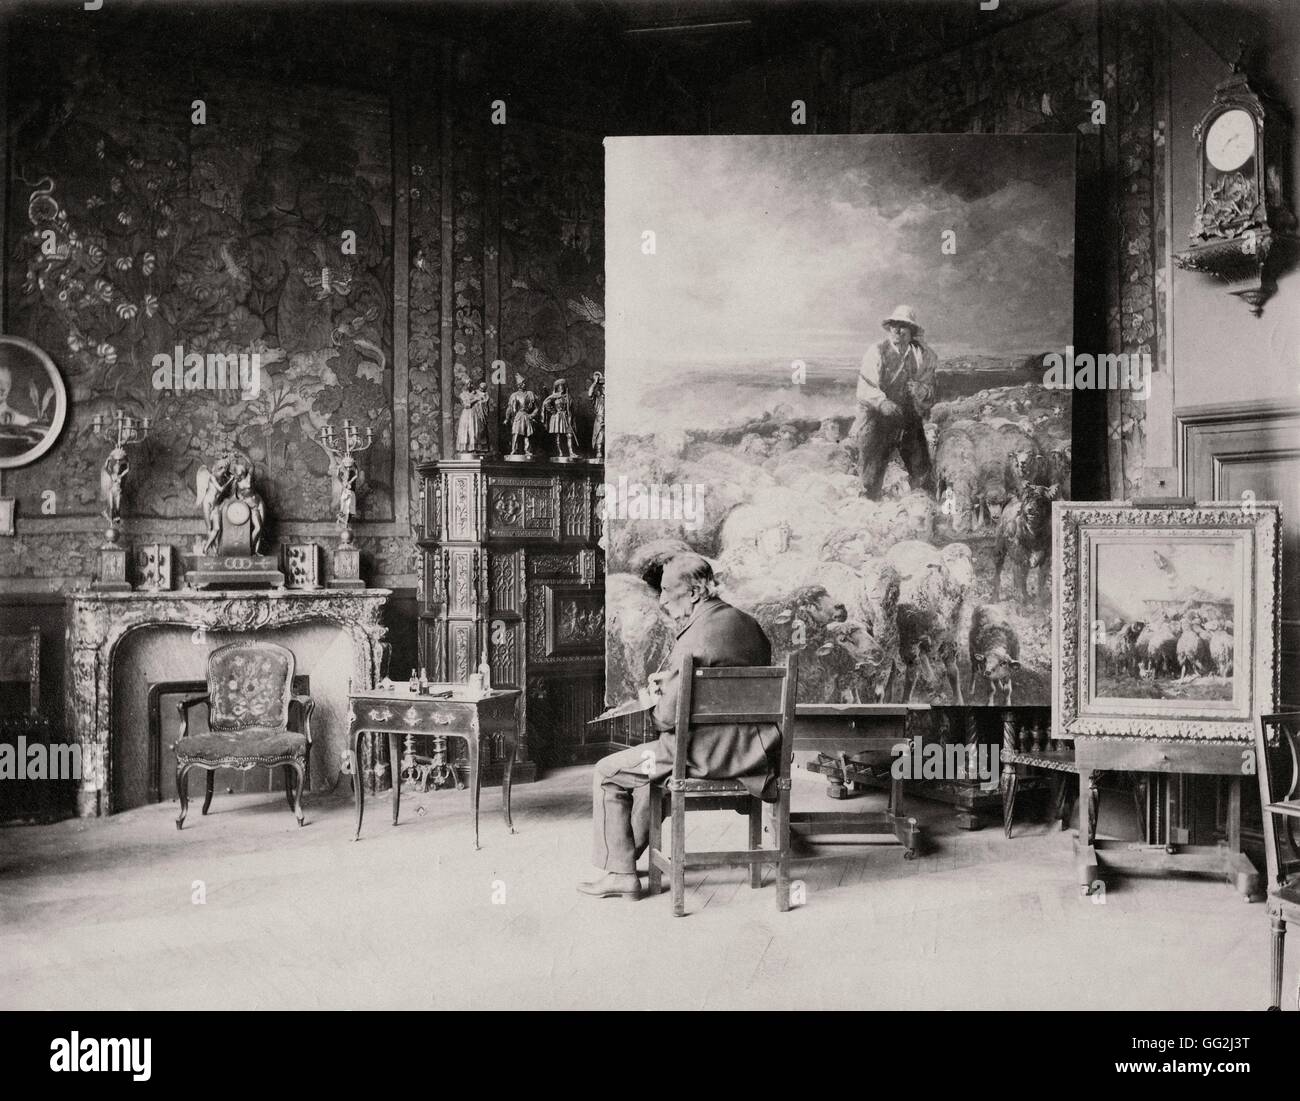 Französischer Maler Charles Jacque im Atelier Paris gelegen 73 Boulevard de Clichy im 18. Arrondissement in Paris. Foto von Edmond Bénard c.1888. Albumen print. Stockfoto